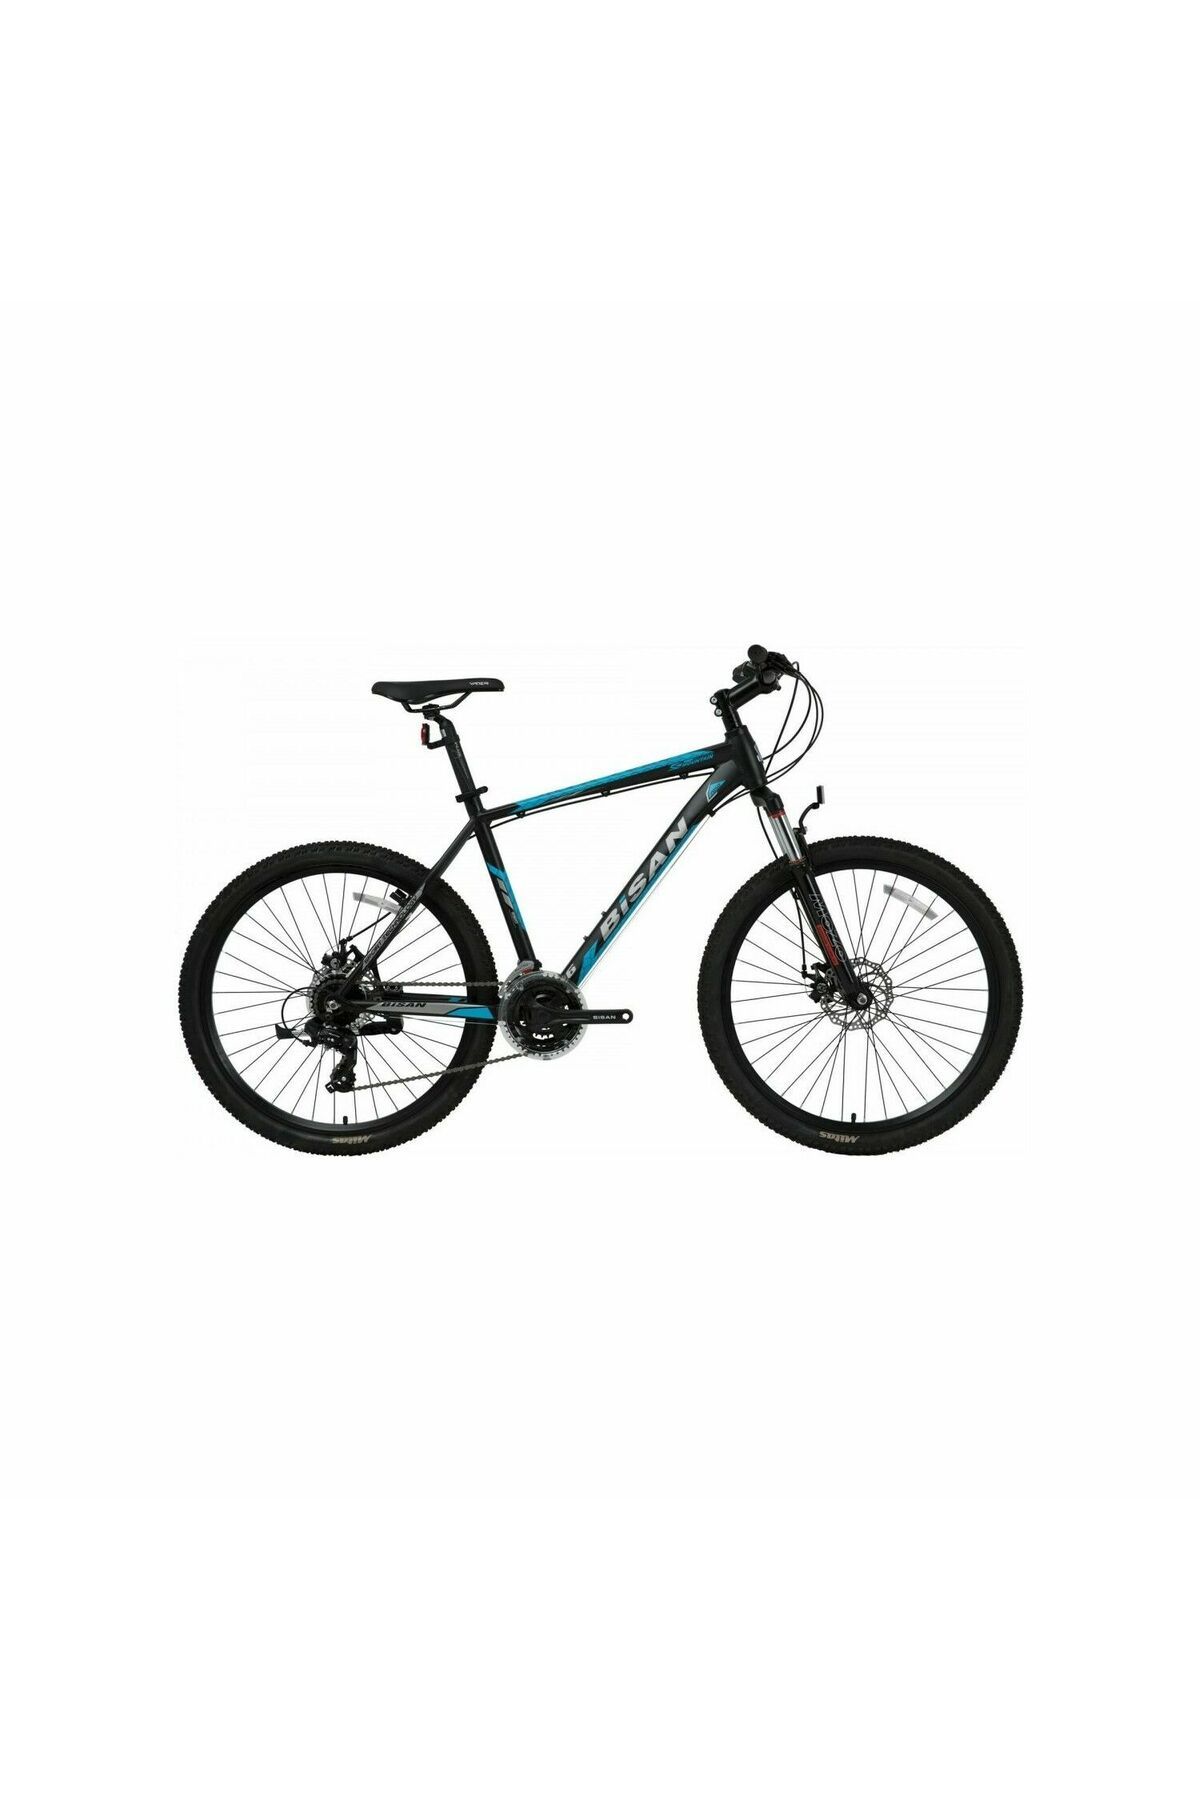 Bisan BİSAN MTX 7050 26 Jant 21 Vites MD Dağ Bisikleti MTB Siyah - Mavi 43CM